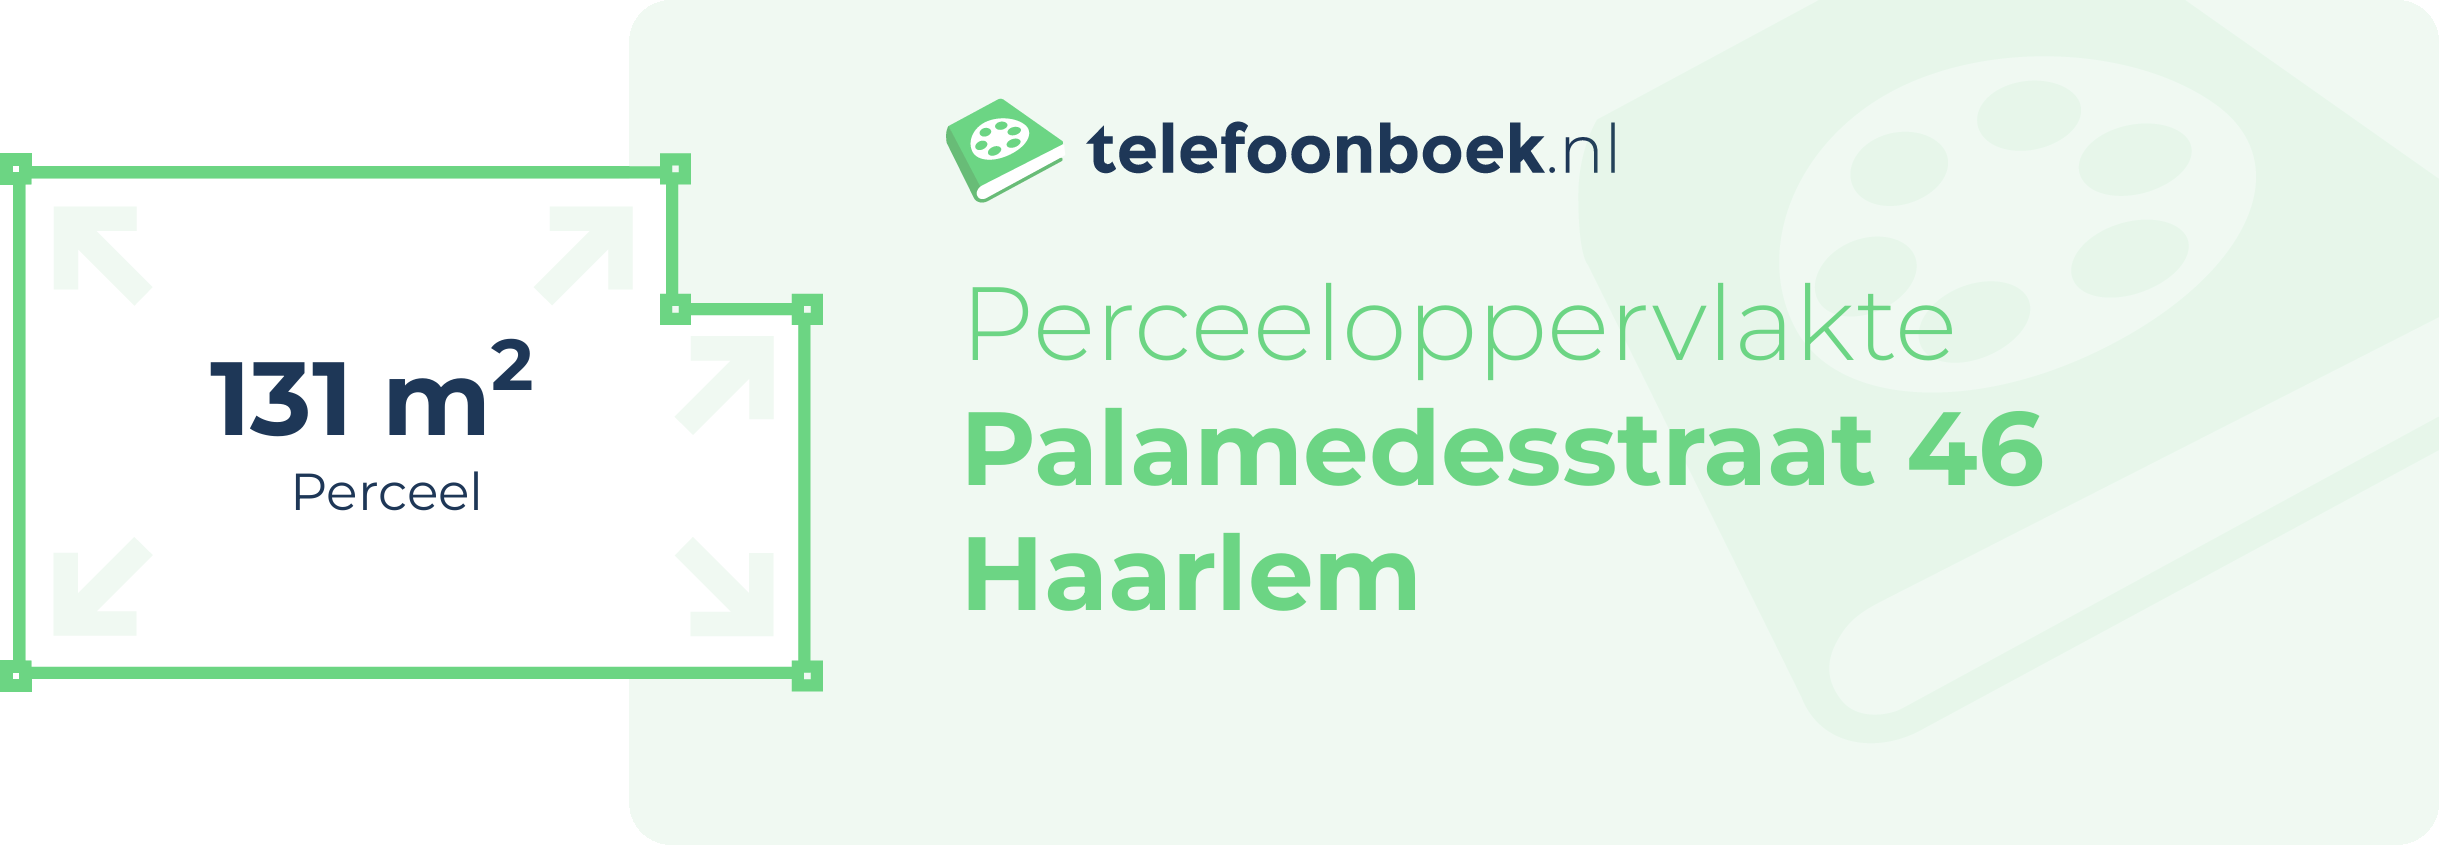 Perceeloppervlakte Palamedesstraat 46 Haarlem